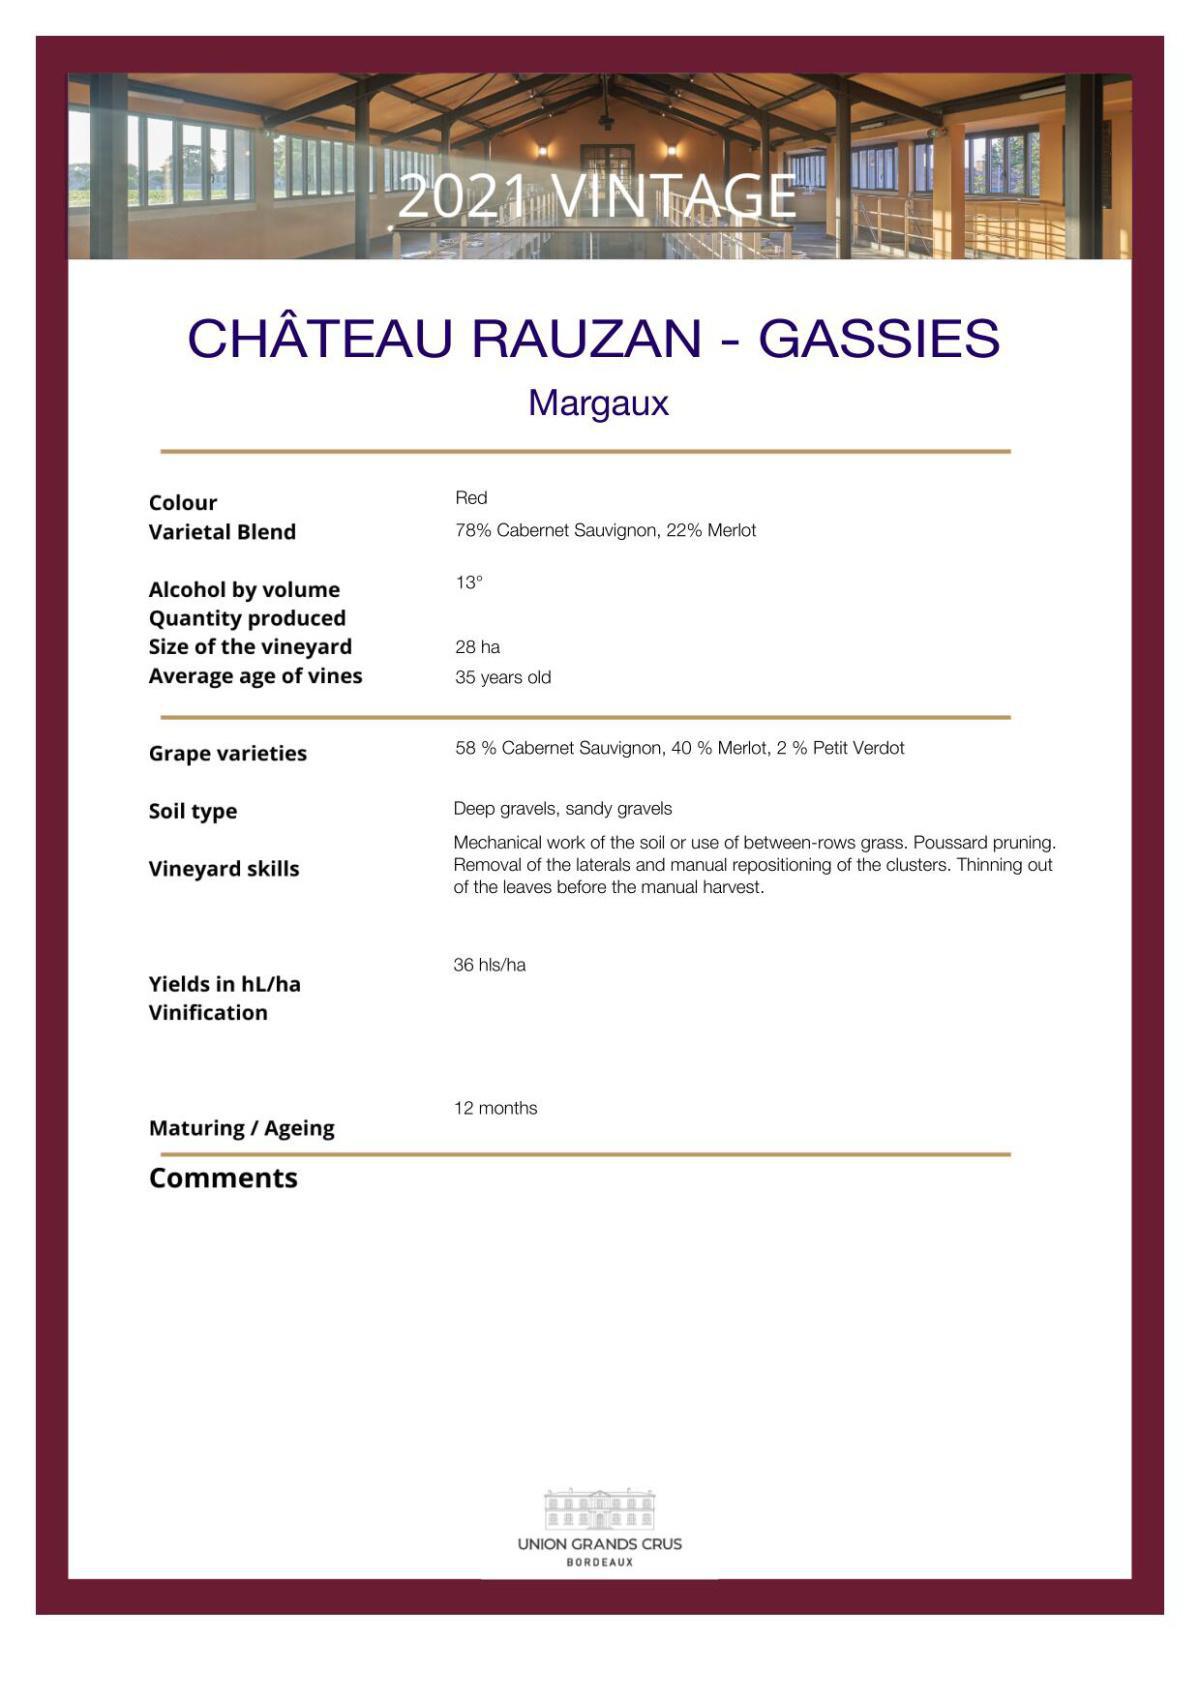 Château Rauzan - Gassies